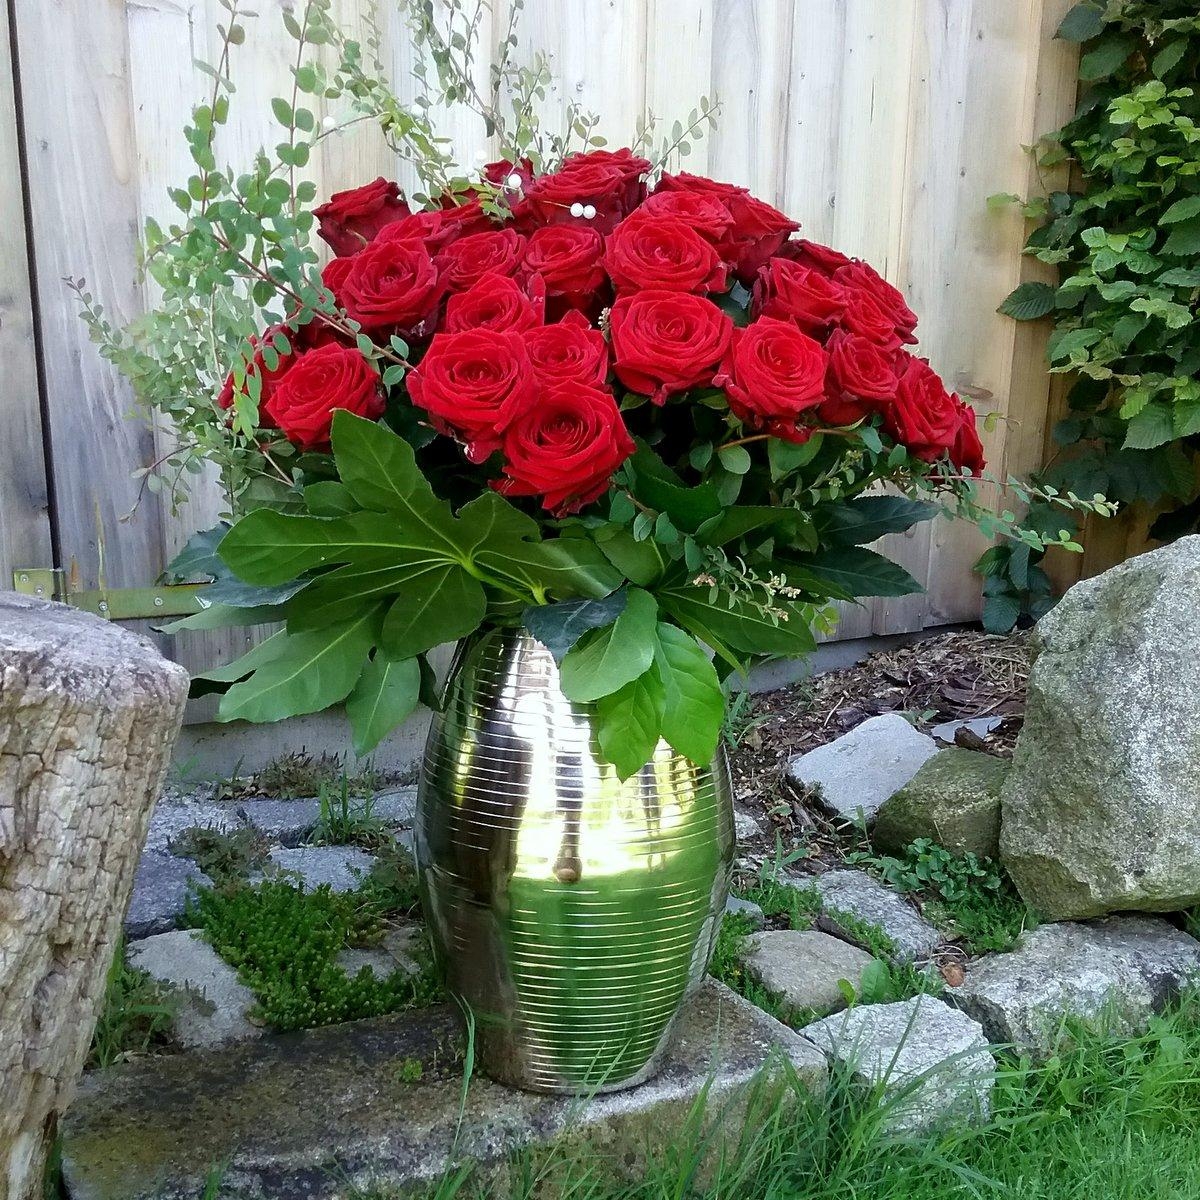 Für jede #Blume das richtige #Gefäß ! prächtiger #Rosenstrauß in einer #Bodenvase aus #Metall 